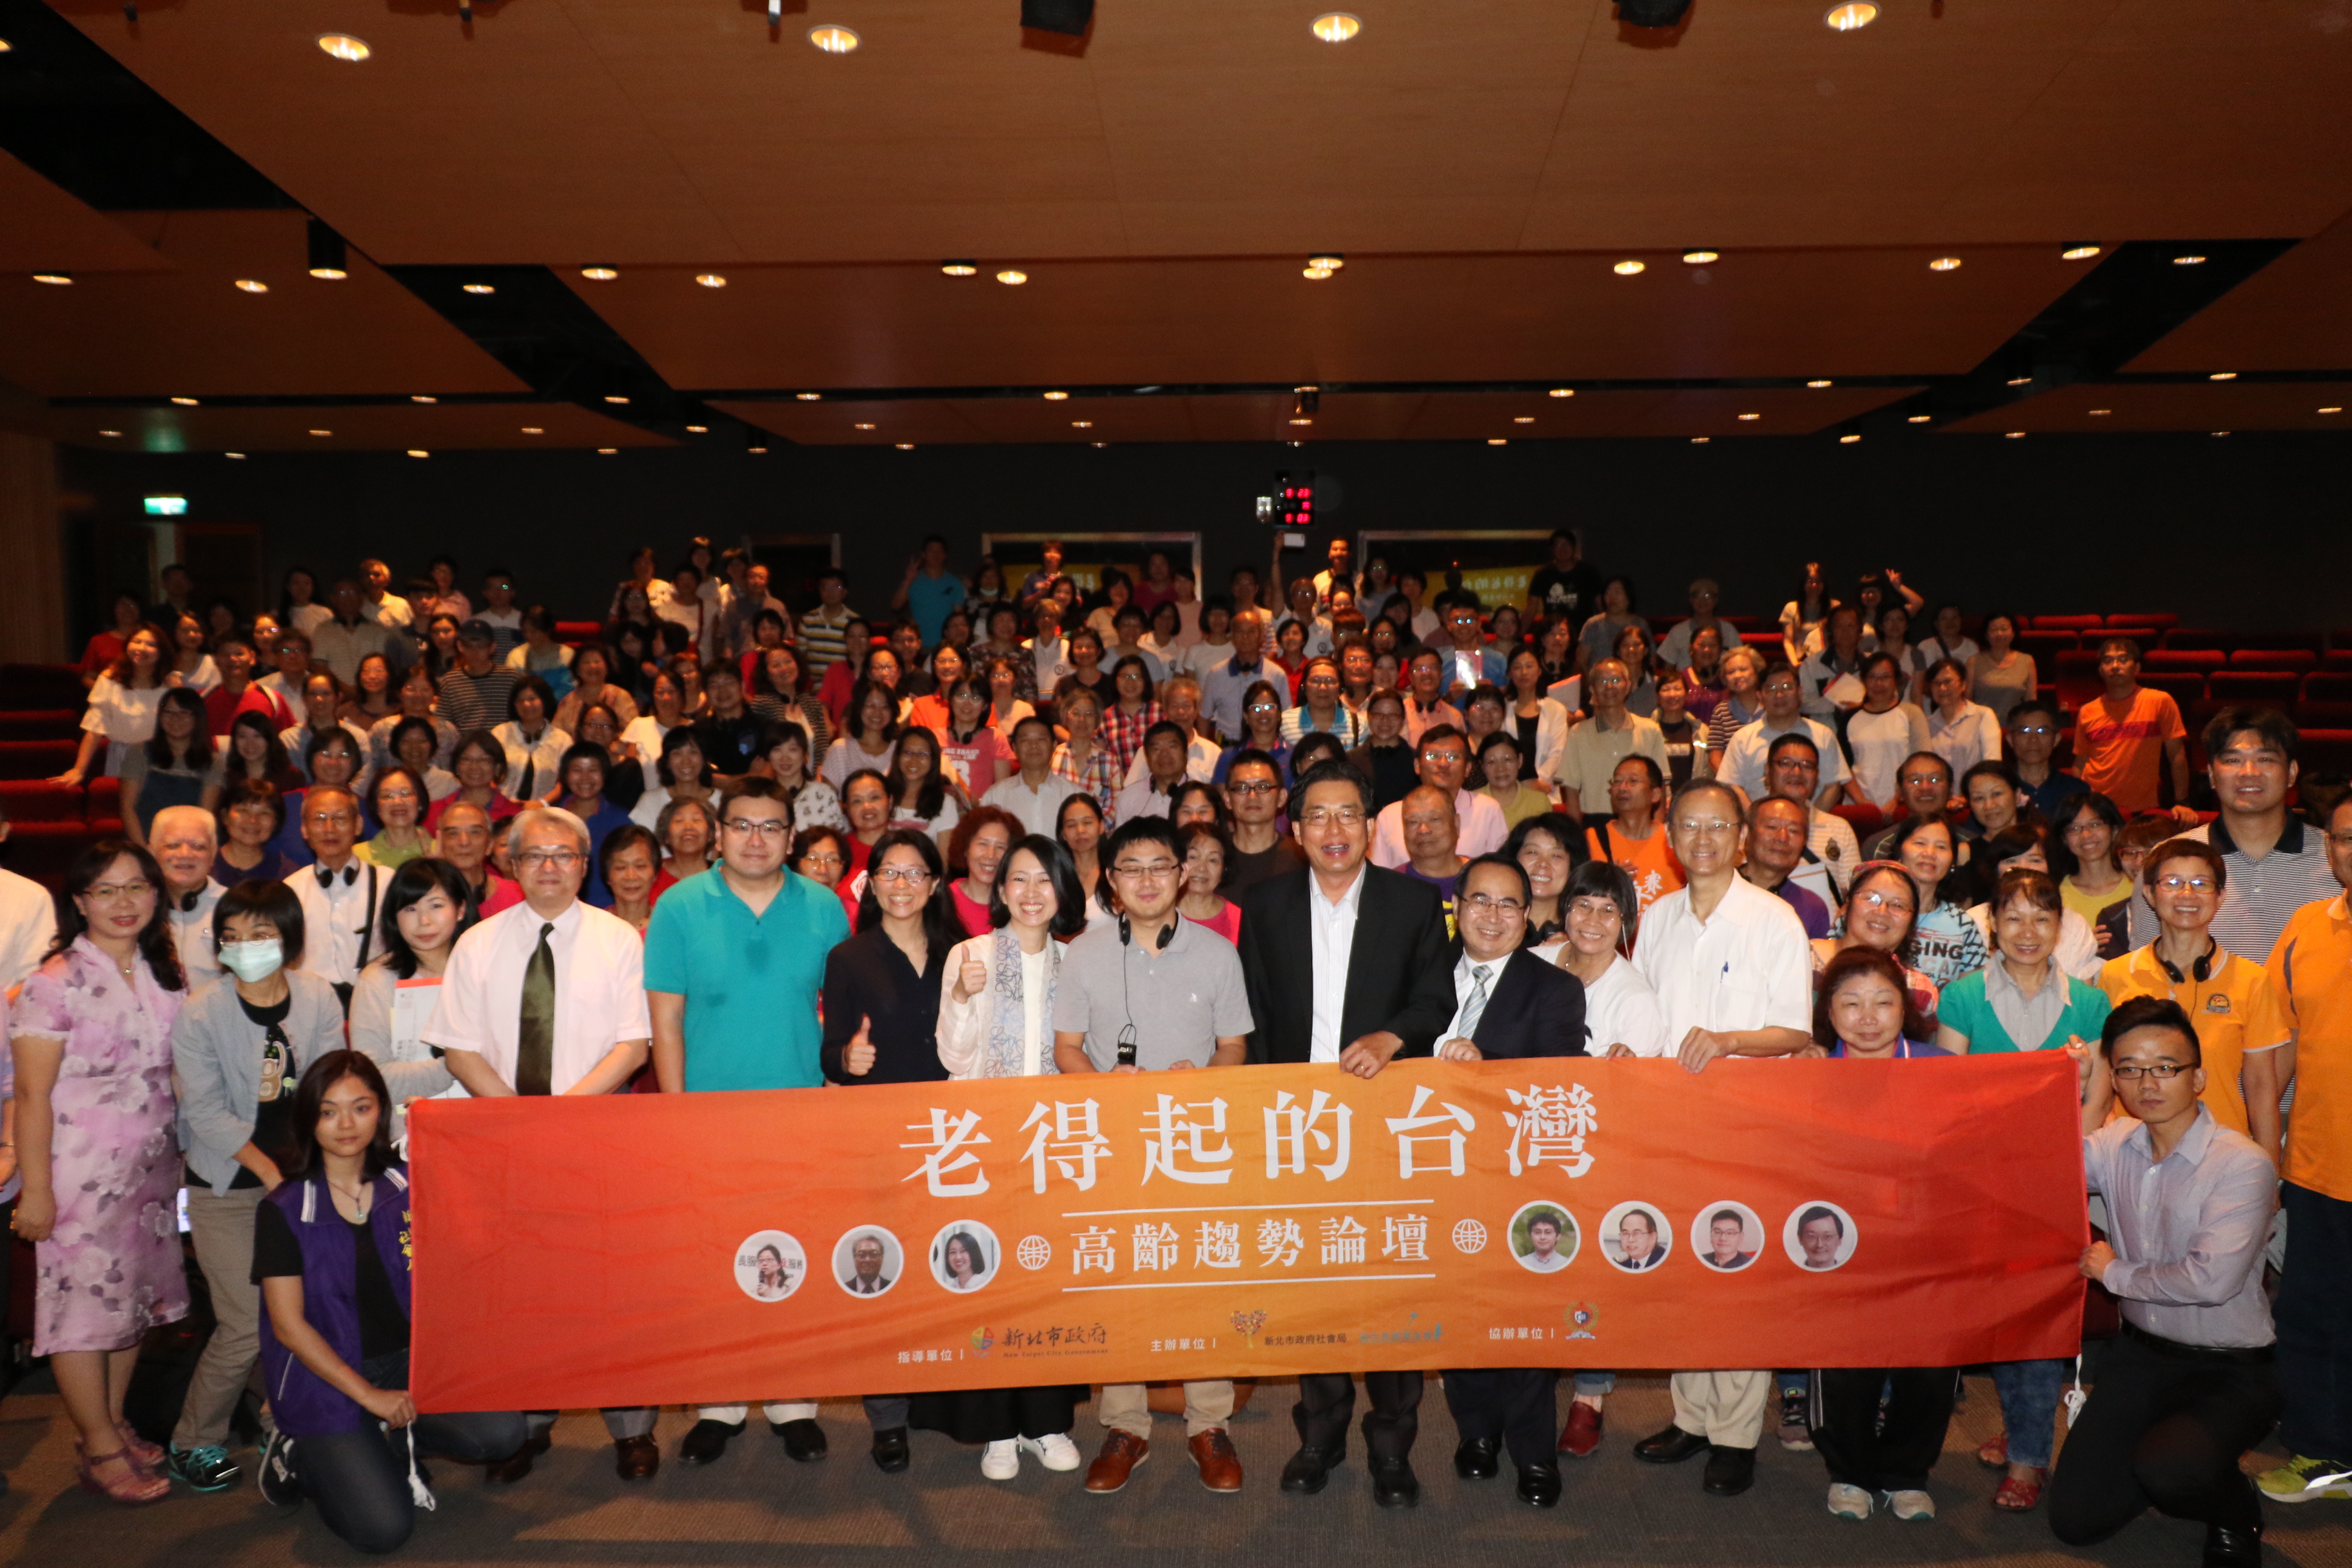 新北市政府社會局和揚生基金會在輔大舉辦老得起的台灣  高齡趨勢論壇  邀產官學一起探討